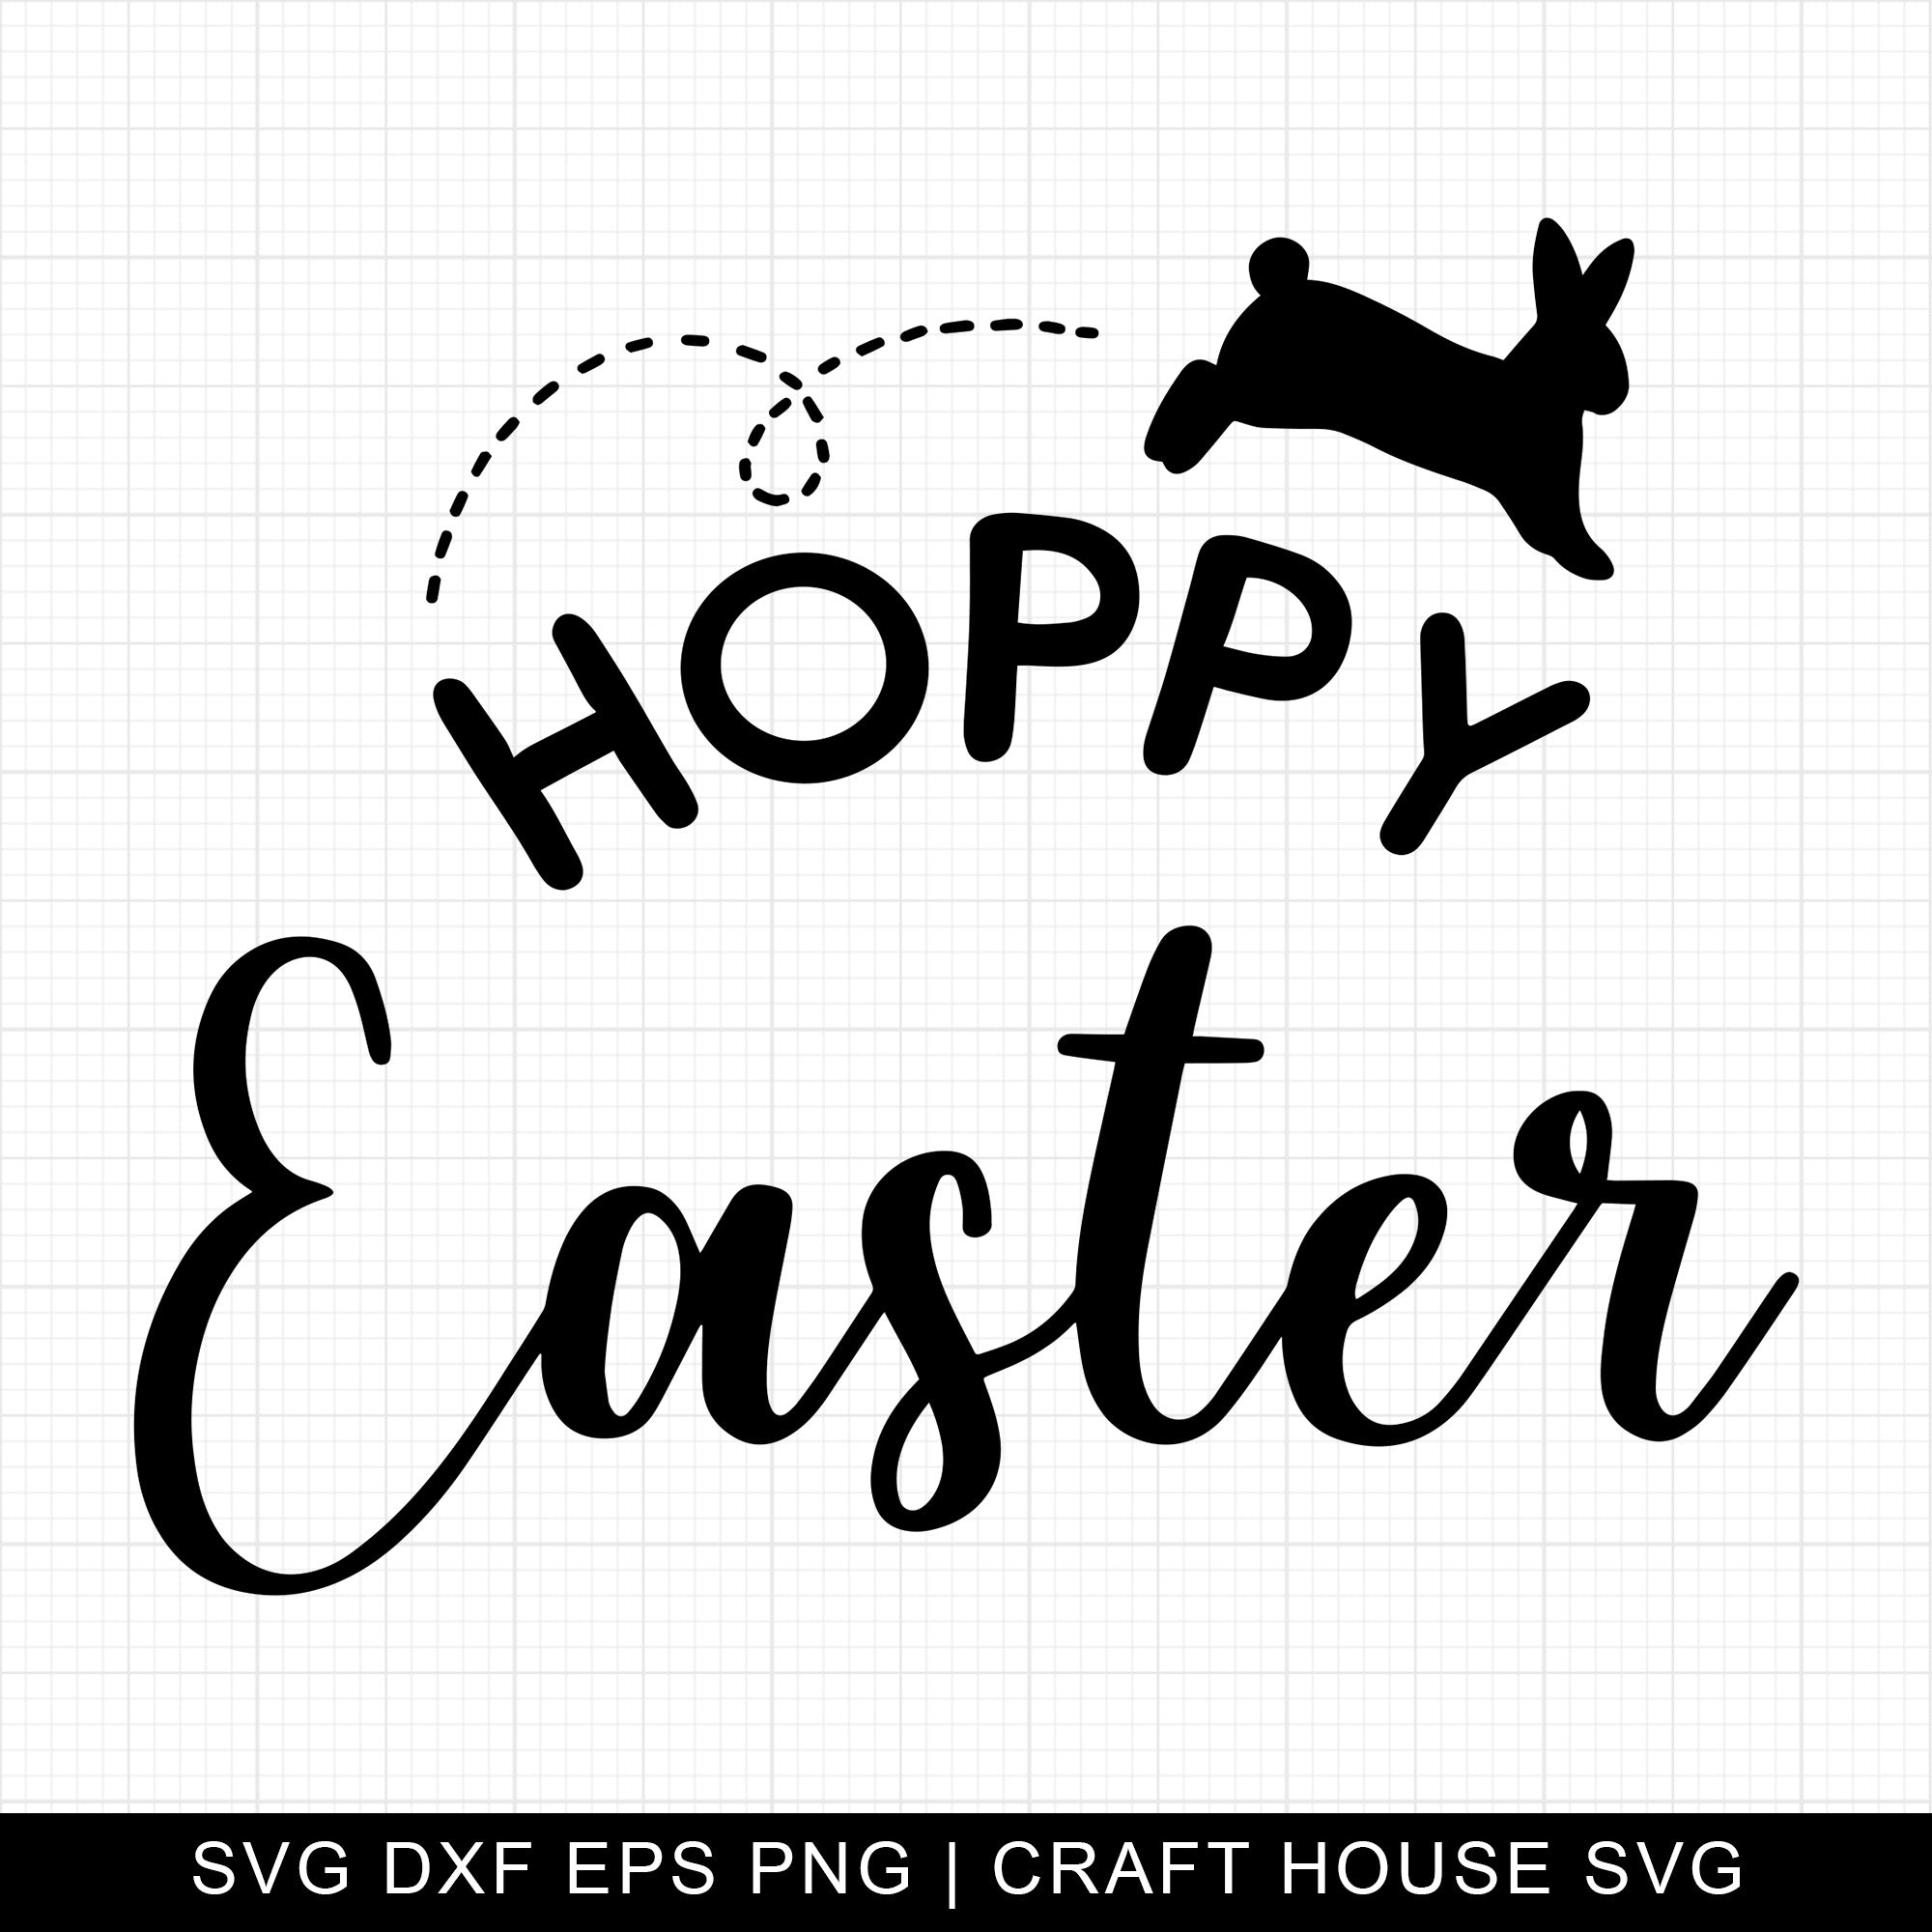 Hoppy Easter SVG | M9F8